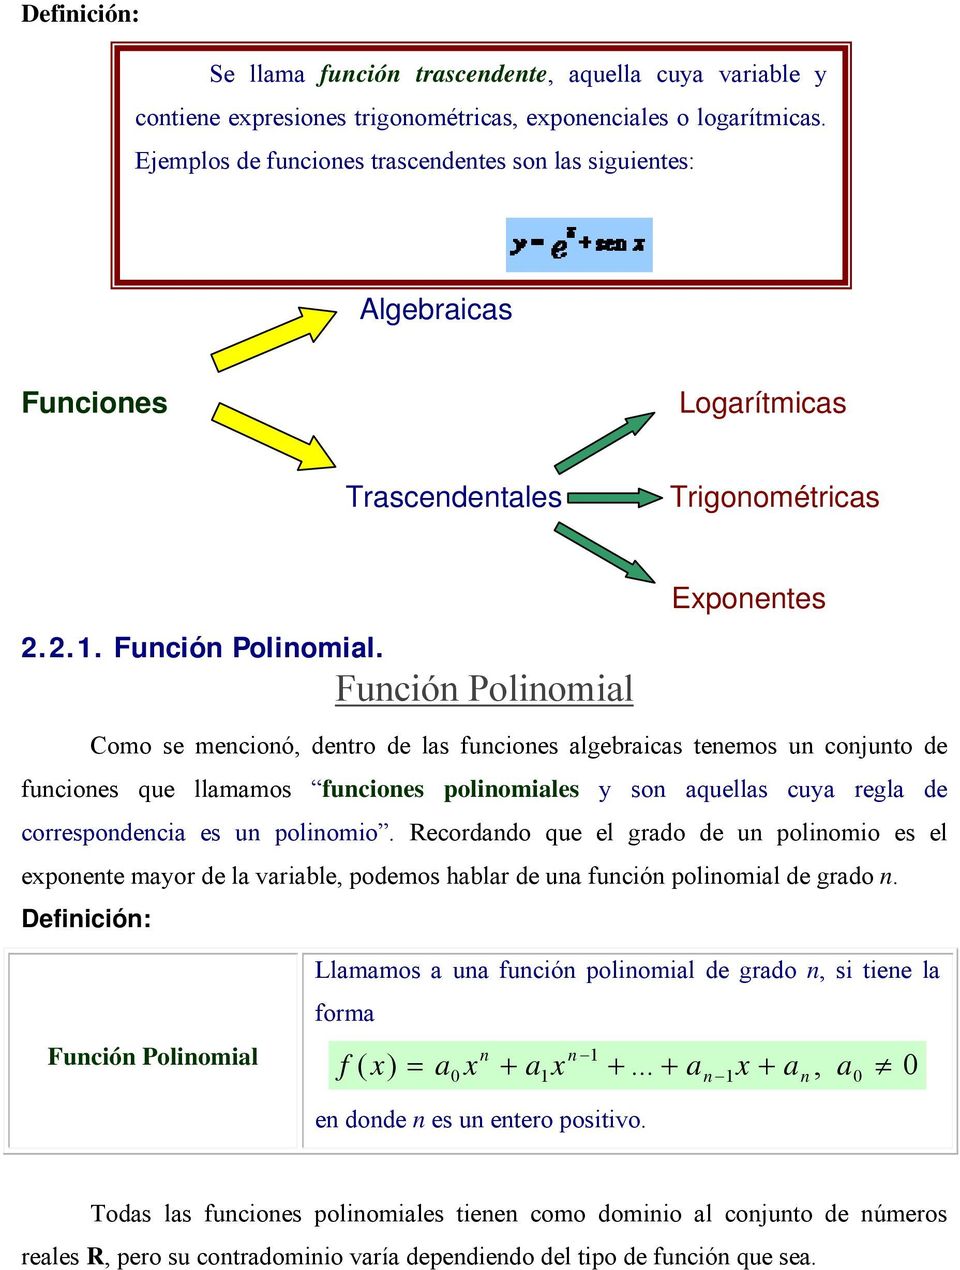 Función Polinomial Eponentes Como se mencionó, dentro de las funciones algebraicas tenemos un conjunto de funciones que llamamos funciones polinomiales y son aquellas cuya regla de correspondencia es